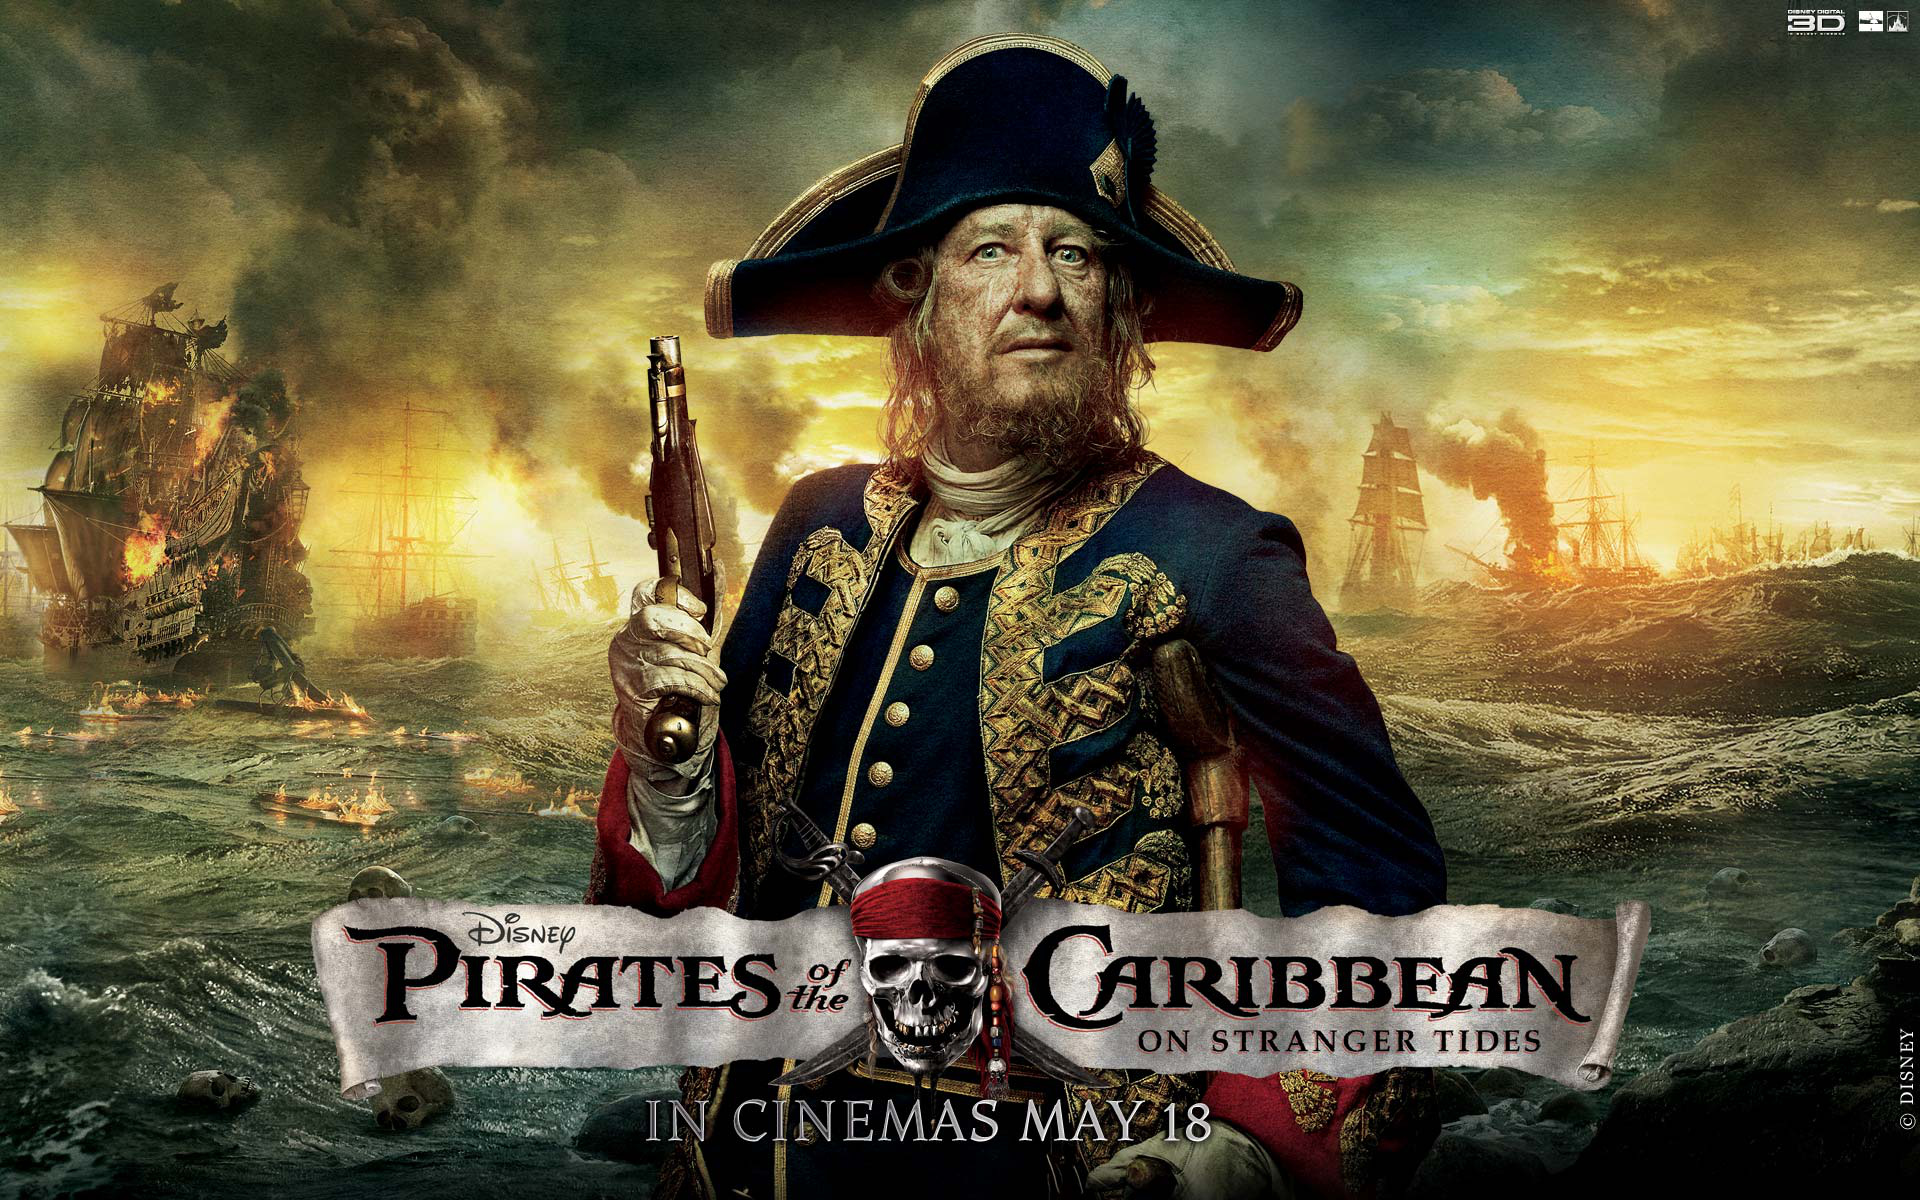 Fondos de Piratas del Caribe 4 En Mareas Misteriosas, Wallpapers